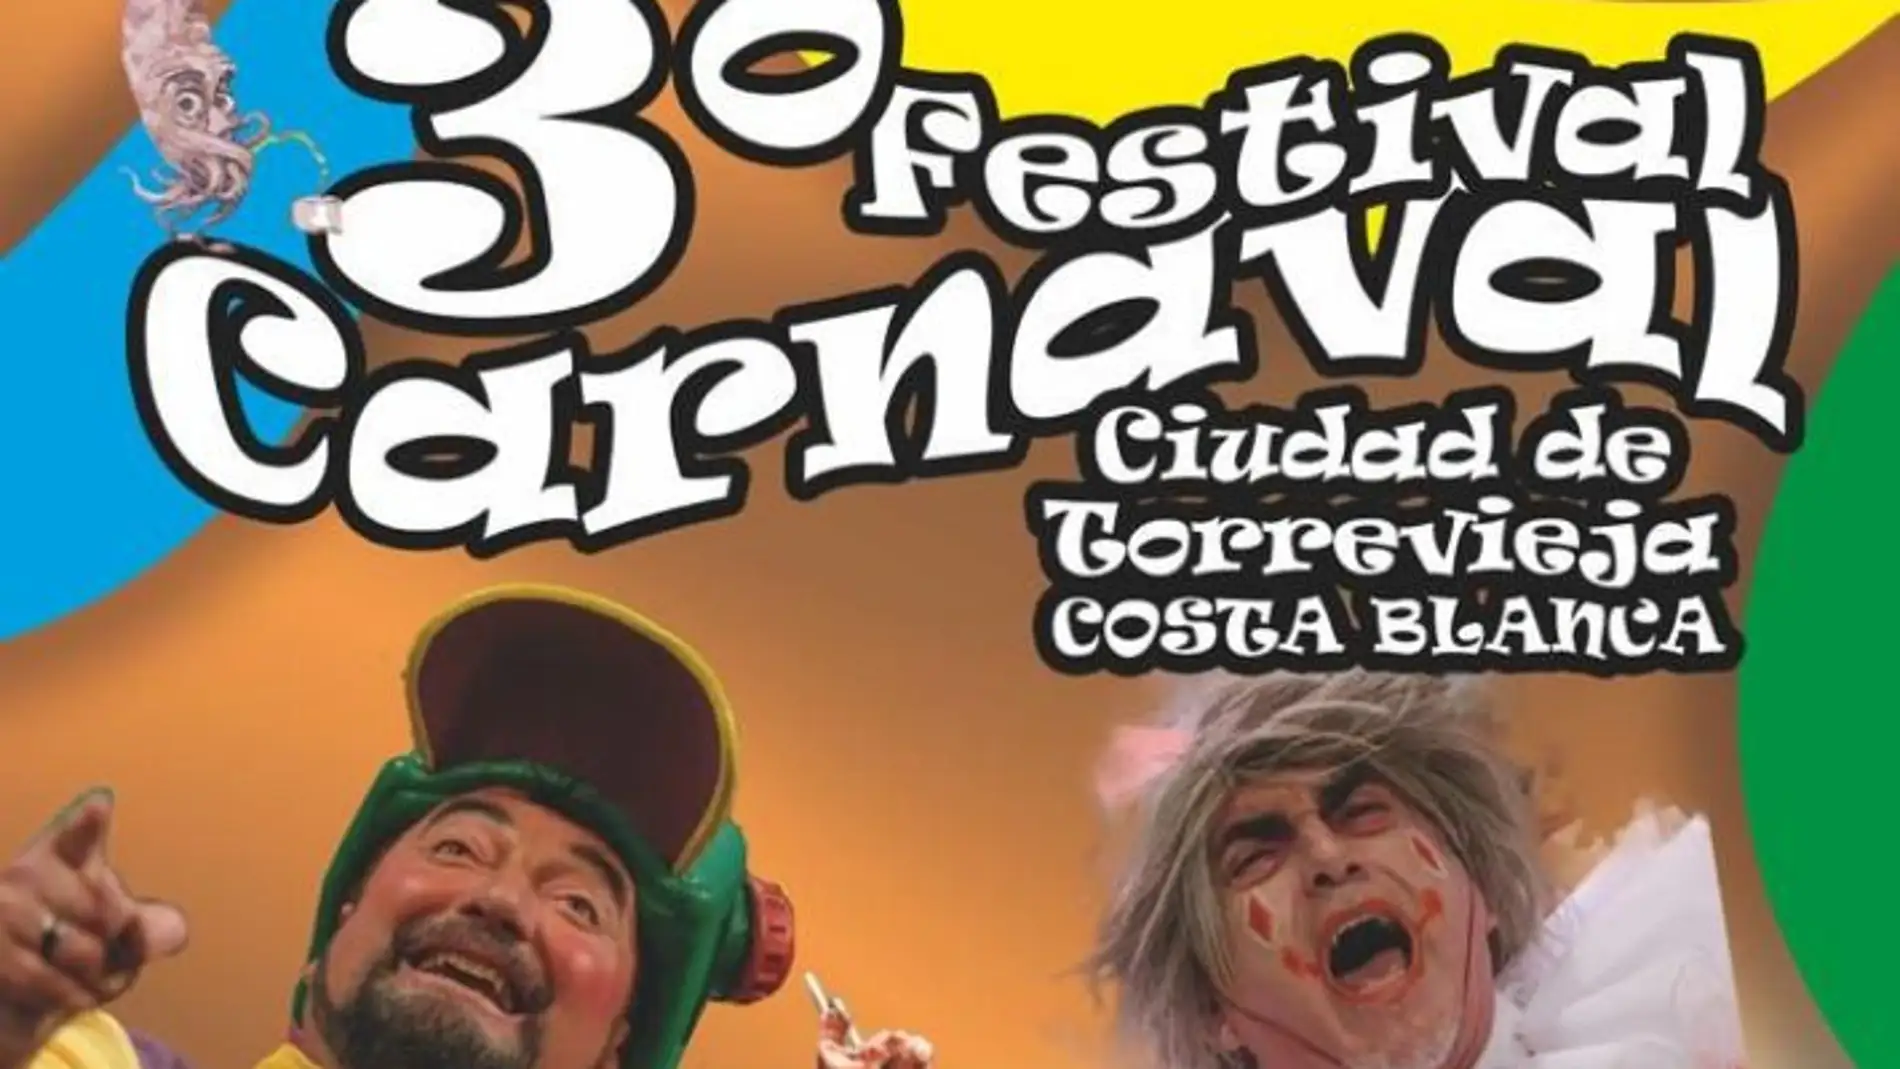 Vuelven las chirigotas a Torrevieja con "El Seru" Y "El Sheriff" participarán en el terver festival de carnaval